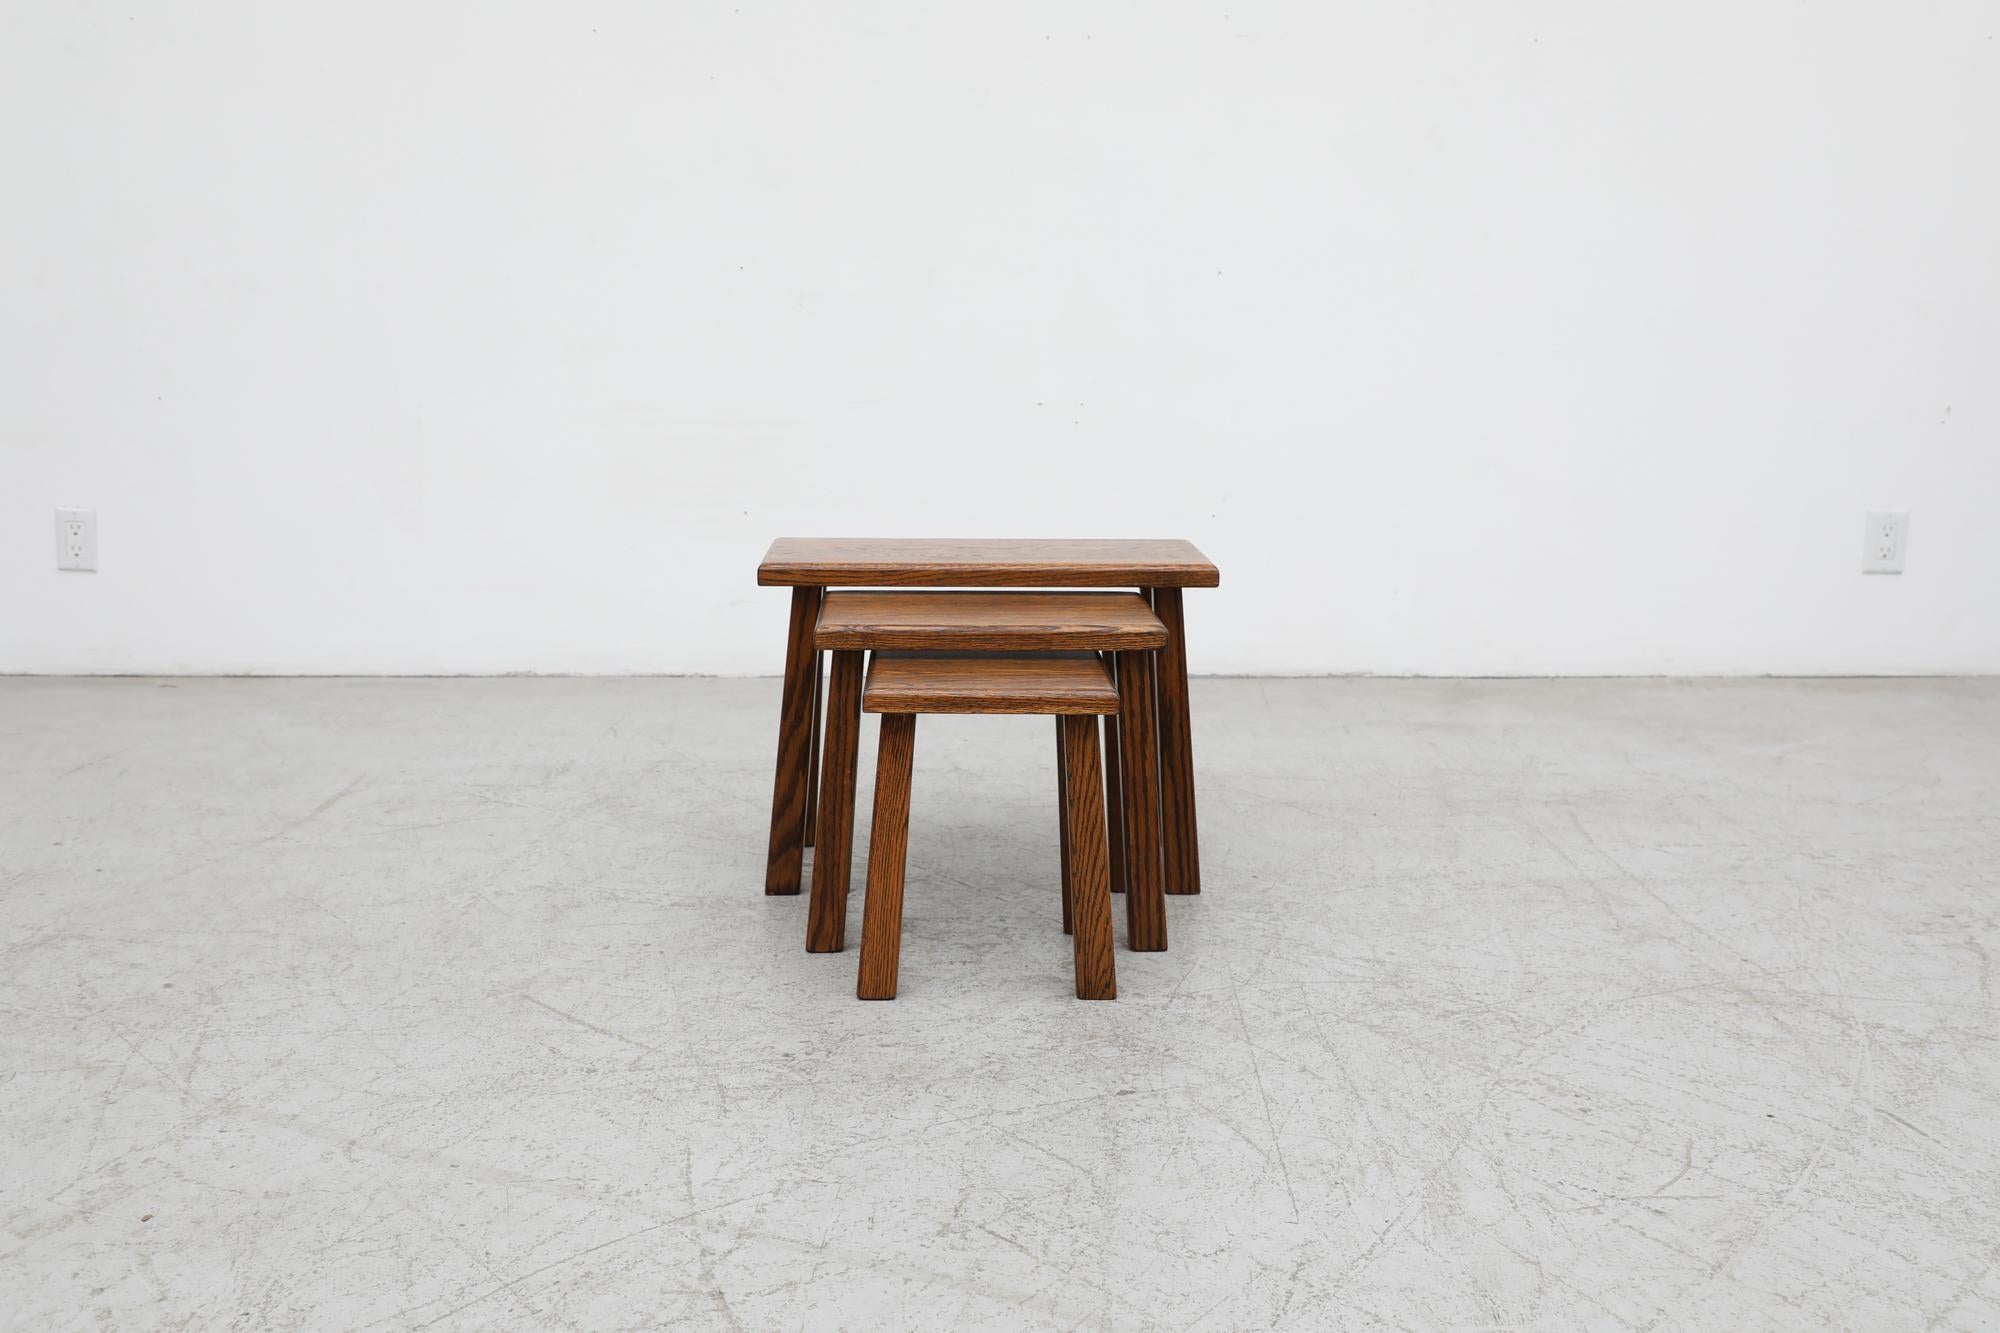 3er-Set von Pierre Chapo inspirierter Brutalismus-Tische aus dunkler Eiche mit hohen, quadratischen Beinen. Die Eiche hat eine schöne, tigerstreifenartige Maserung. In ursprünglichem Zustand mit Abnutzungserscheinungen und etwas sichtbarer Patina,